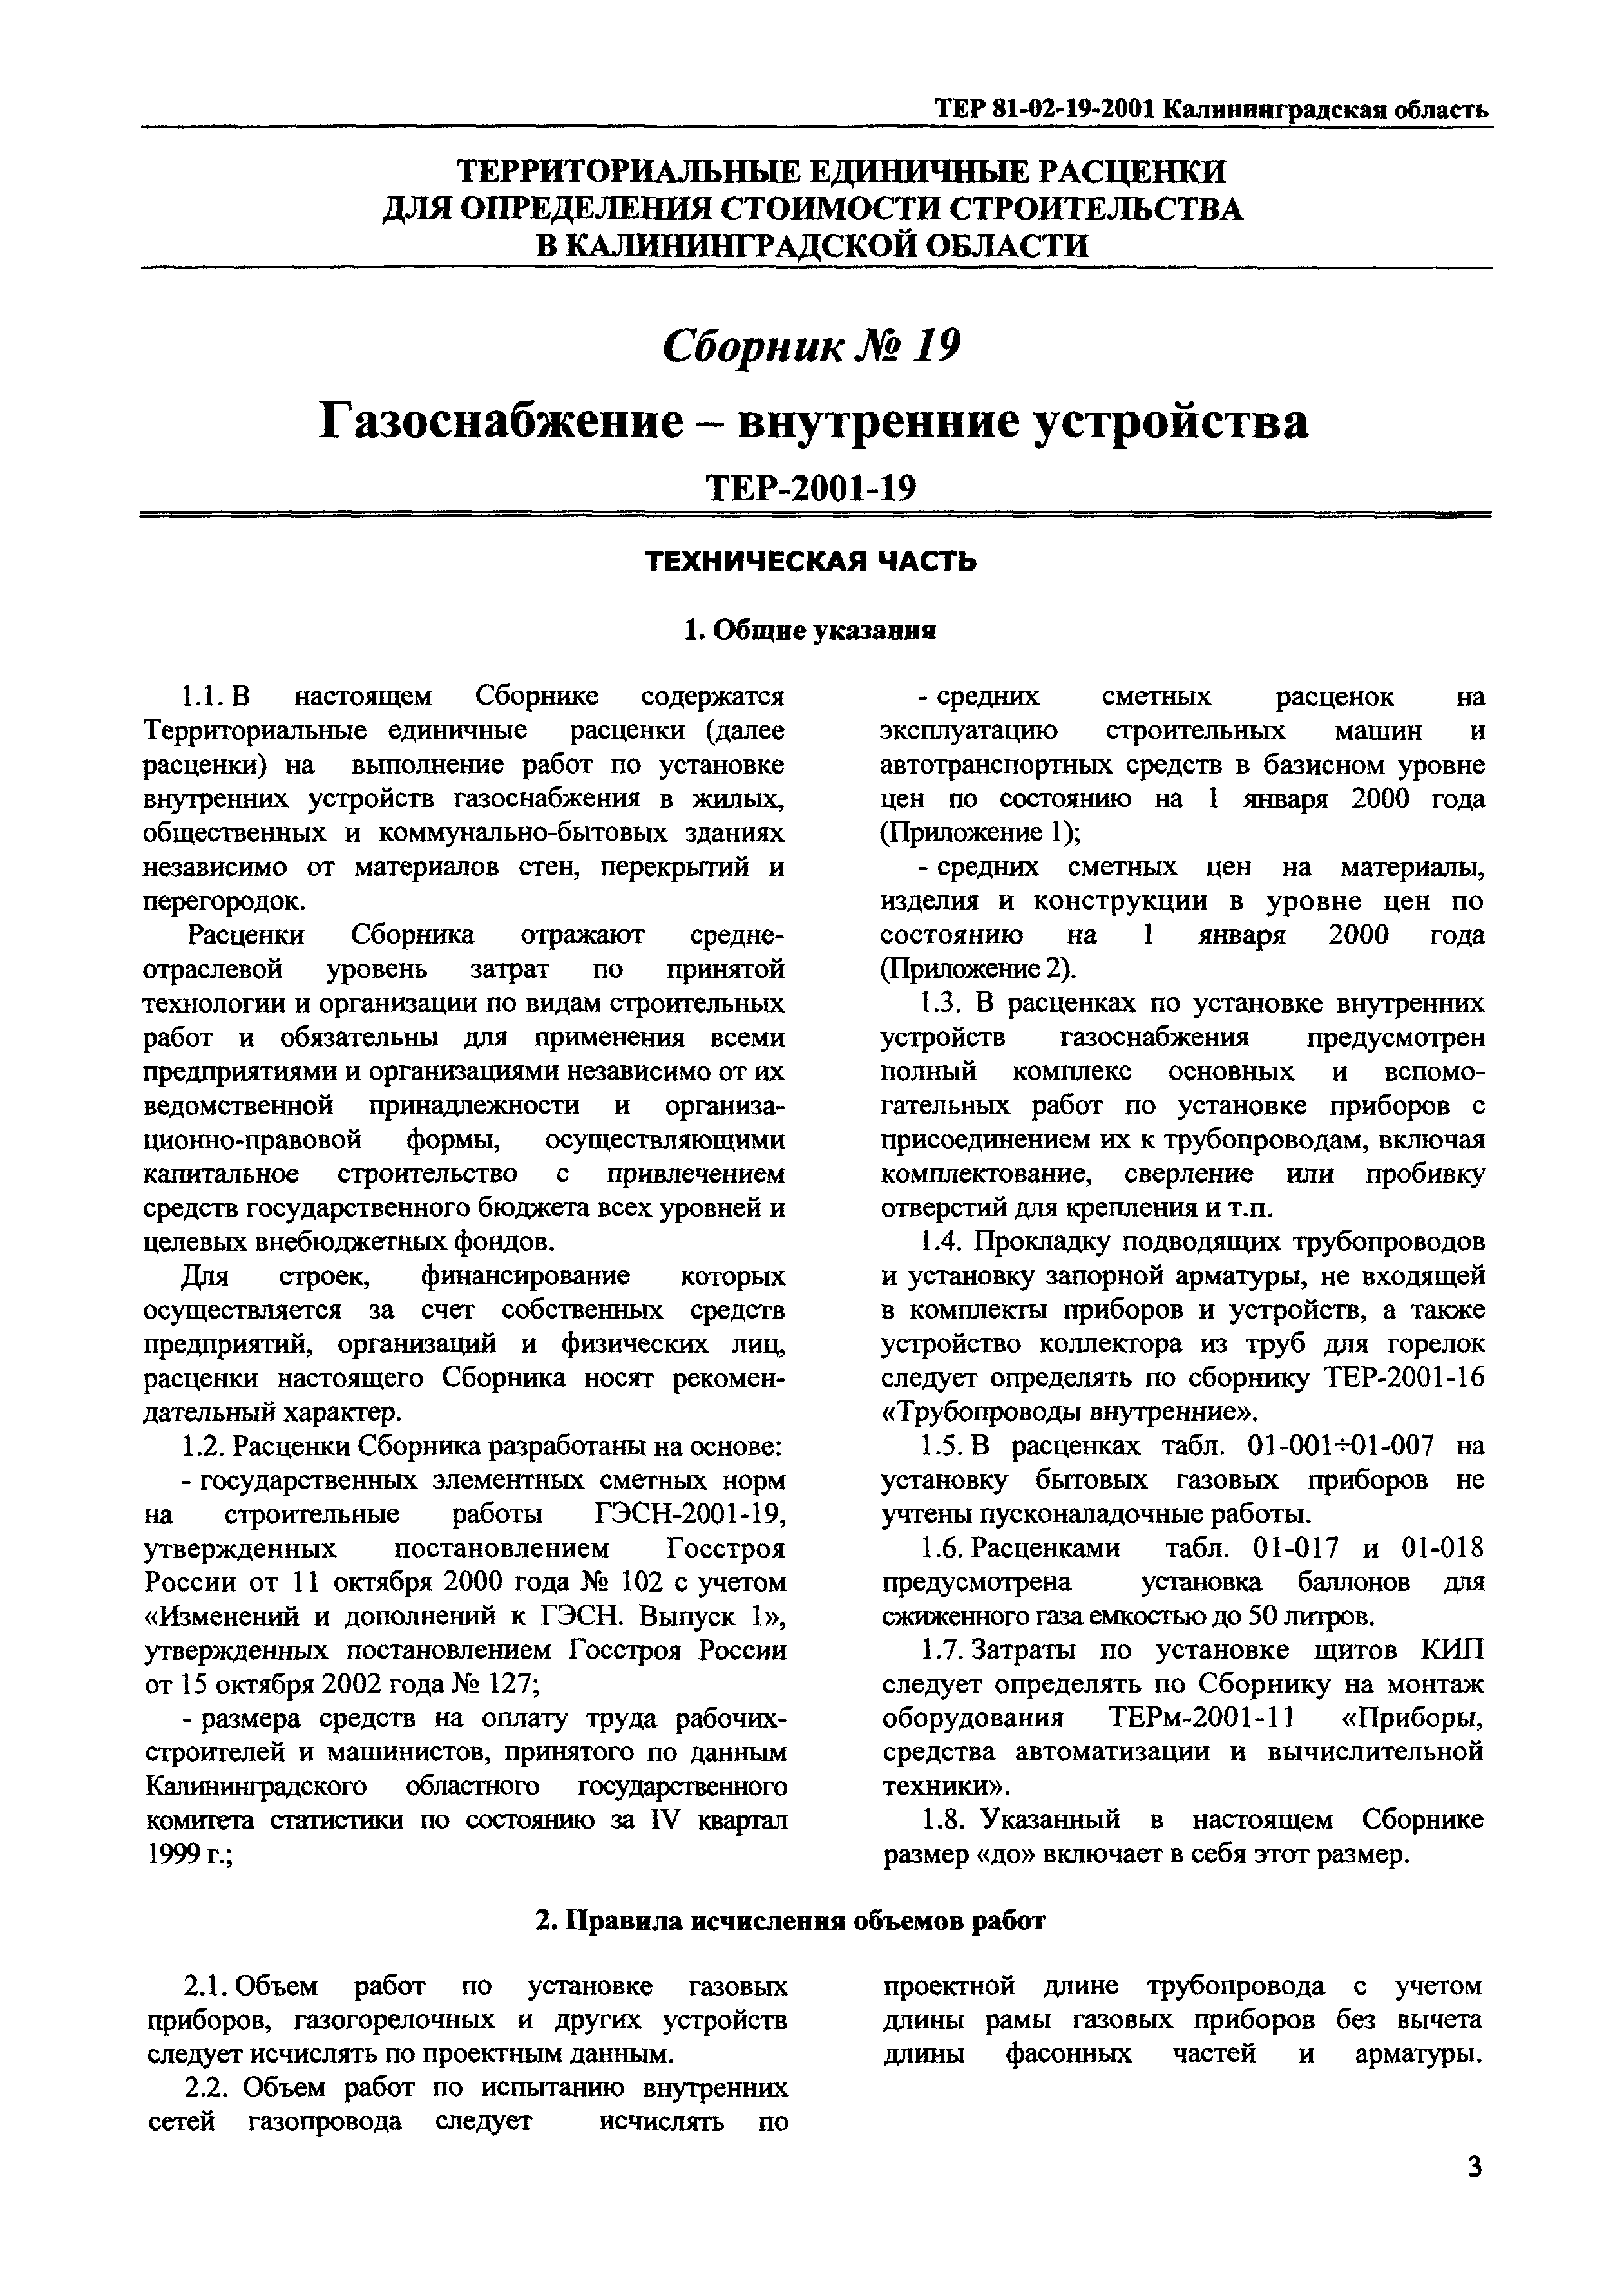 ТЕР Калининградская область 2001-19